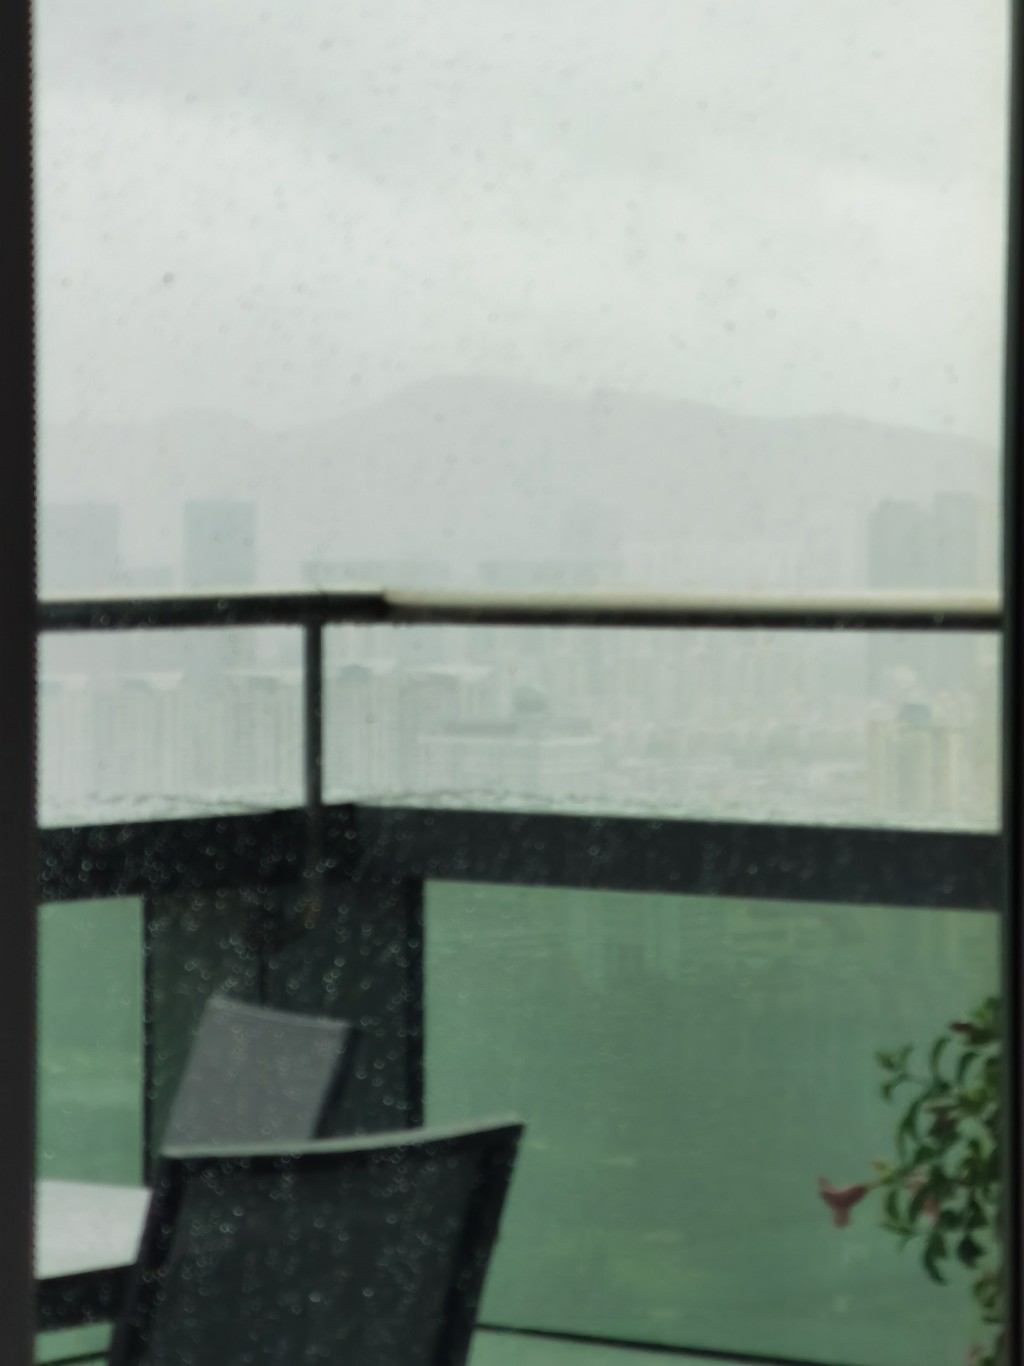 有網民貼出深圳的天氣。